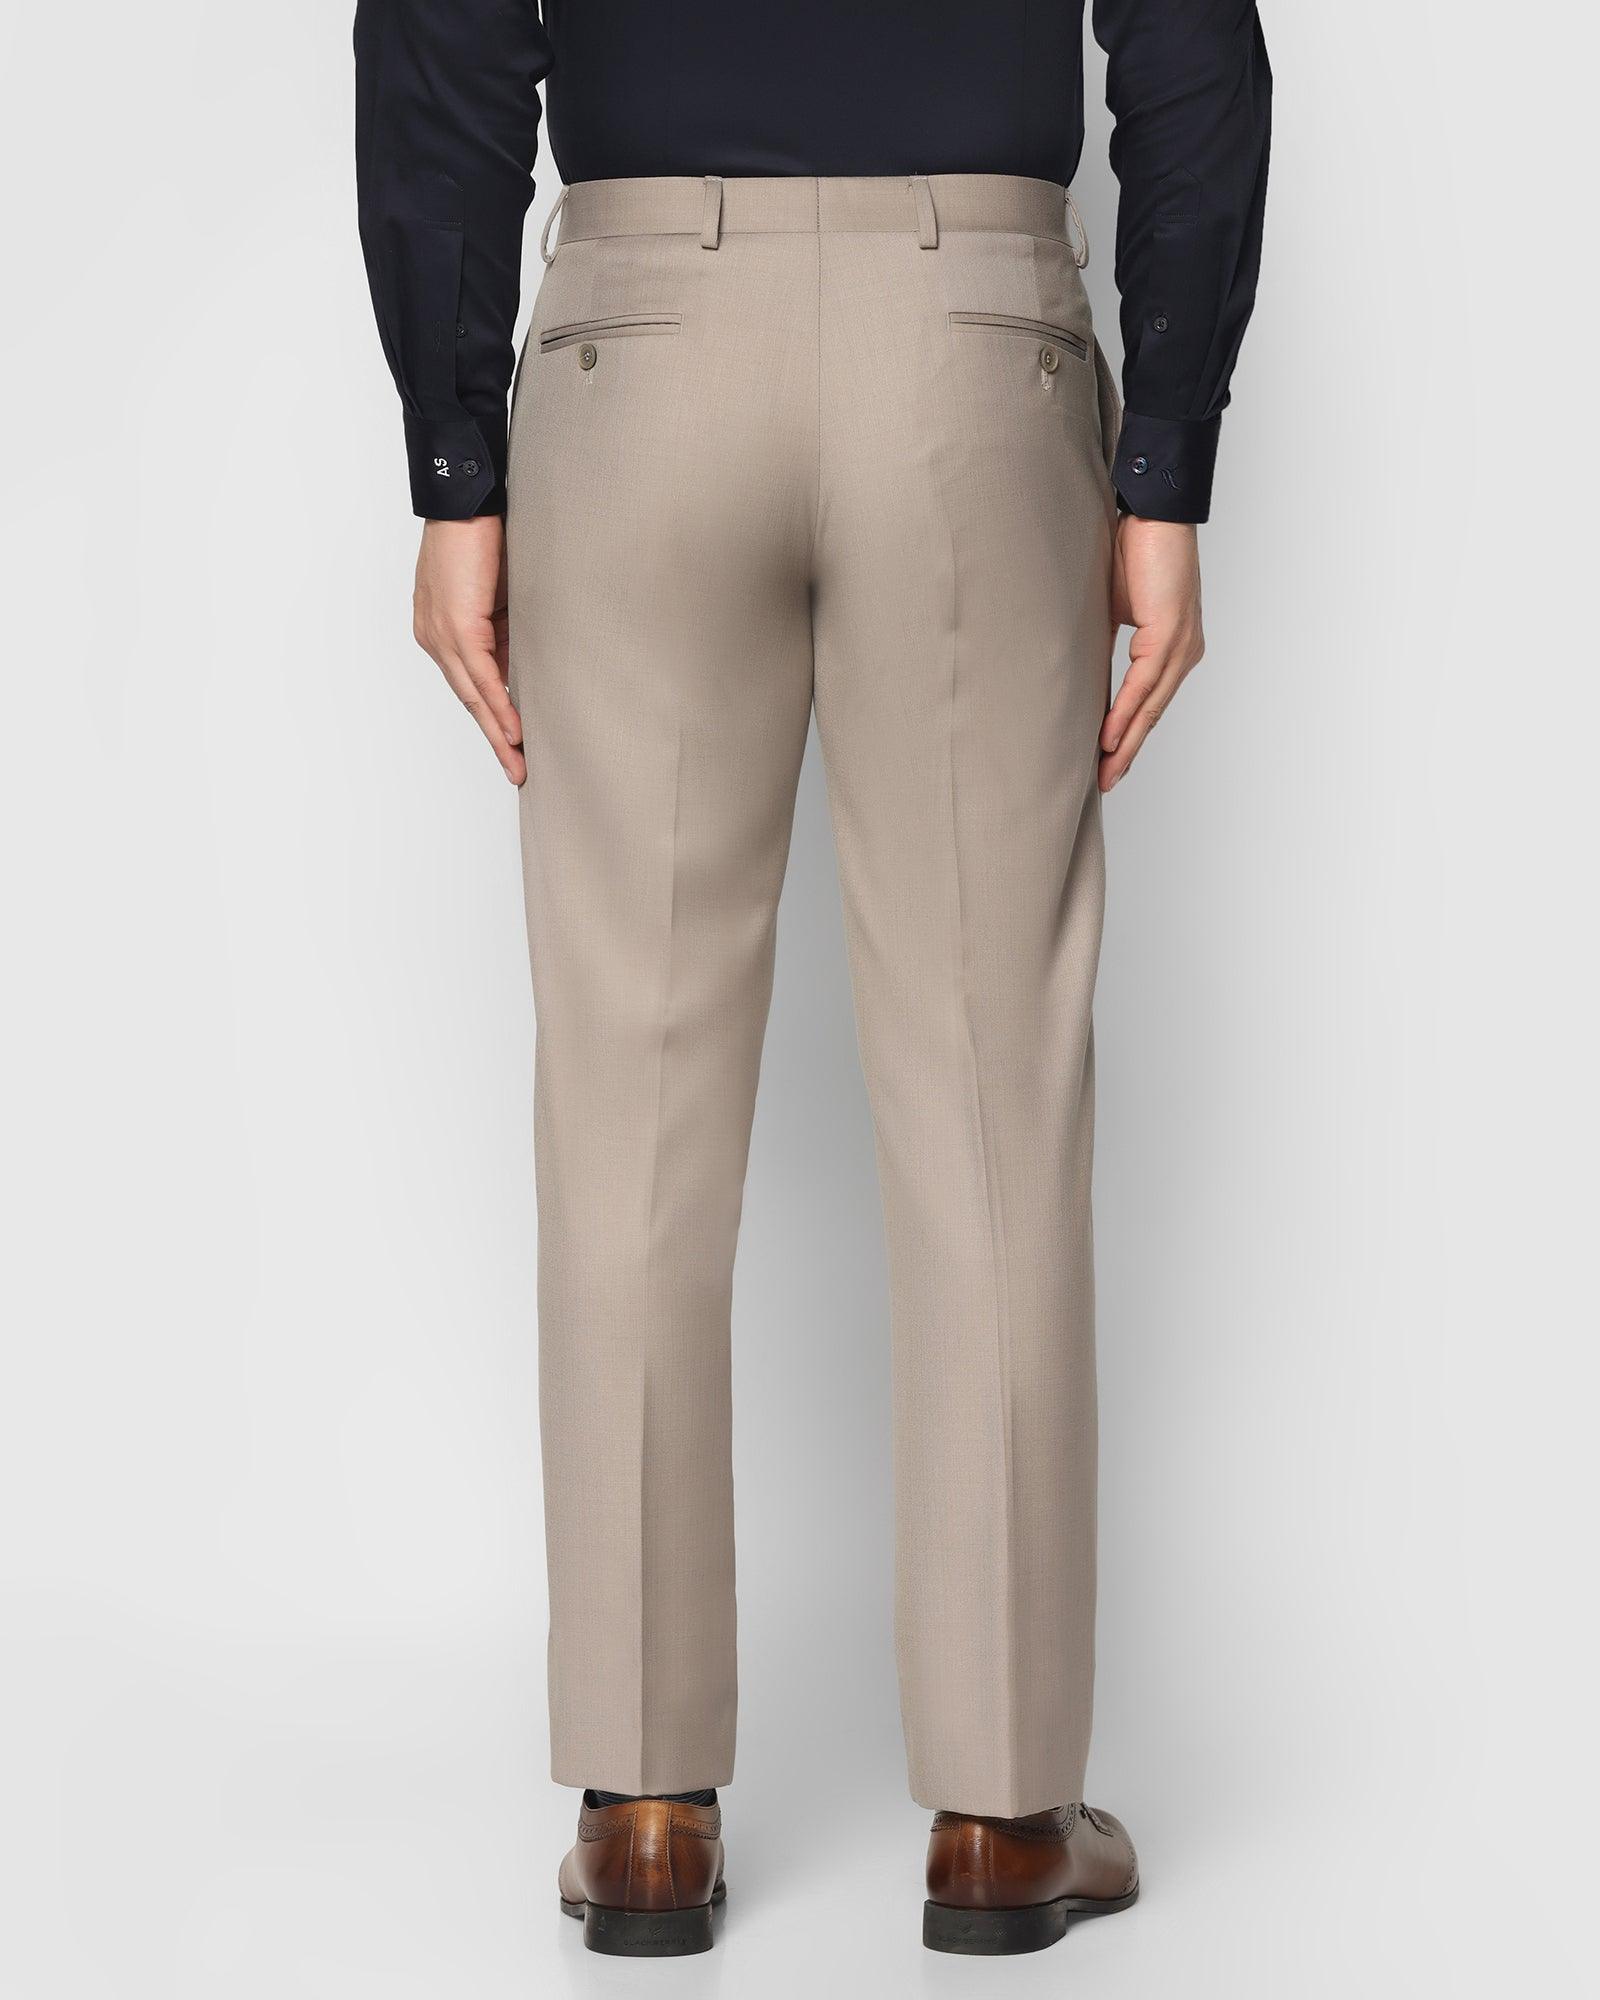 Buy Khaki Trousers  Pants for Women by TRENDYOL Online  Ajiocom